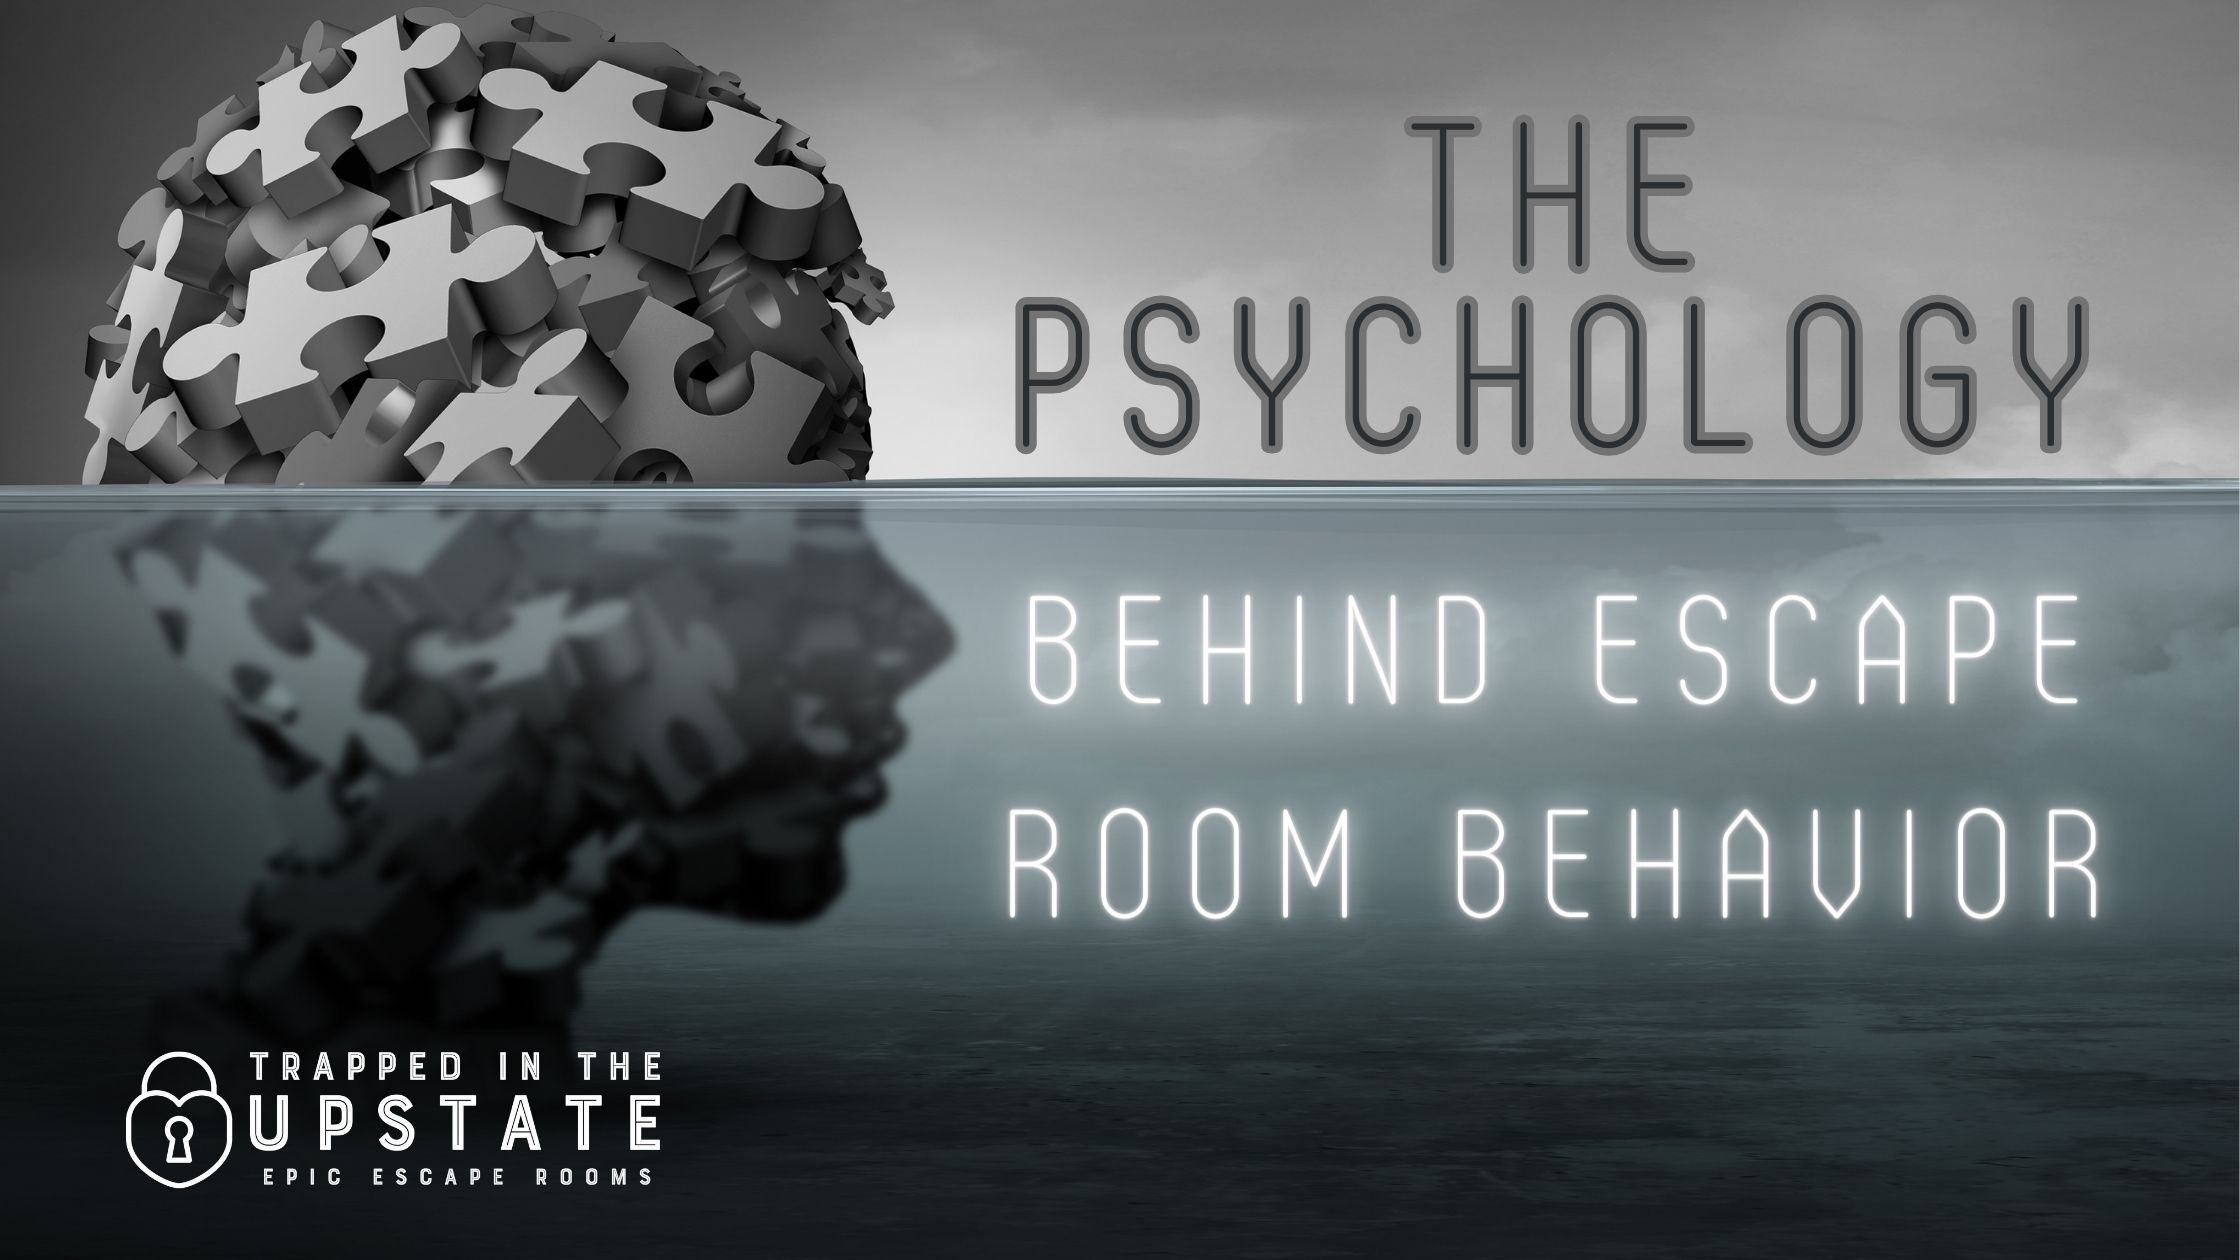 The Psychology Behind Escape Room Behavior